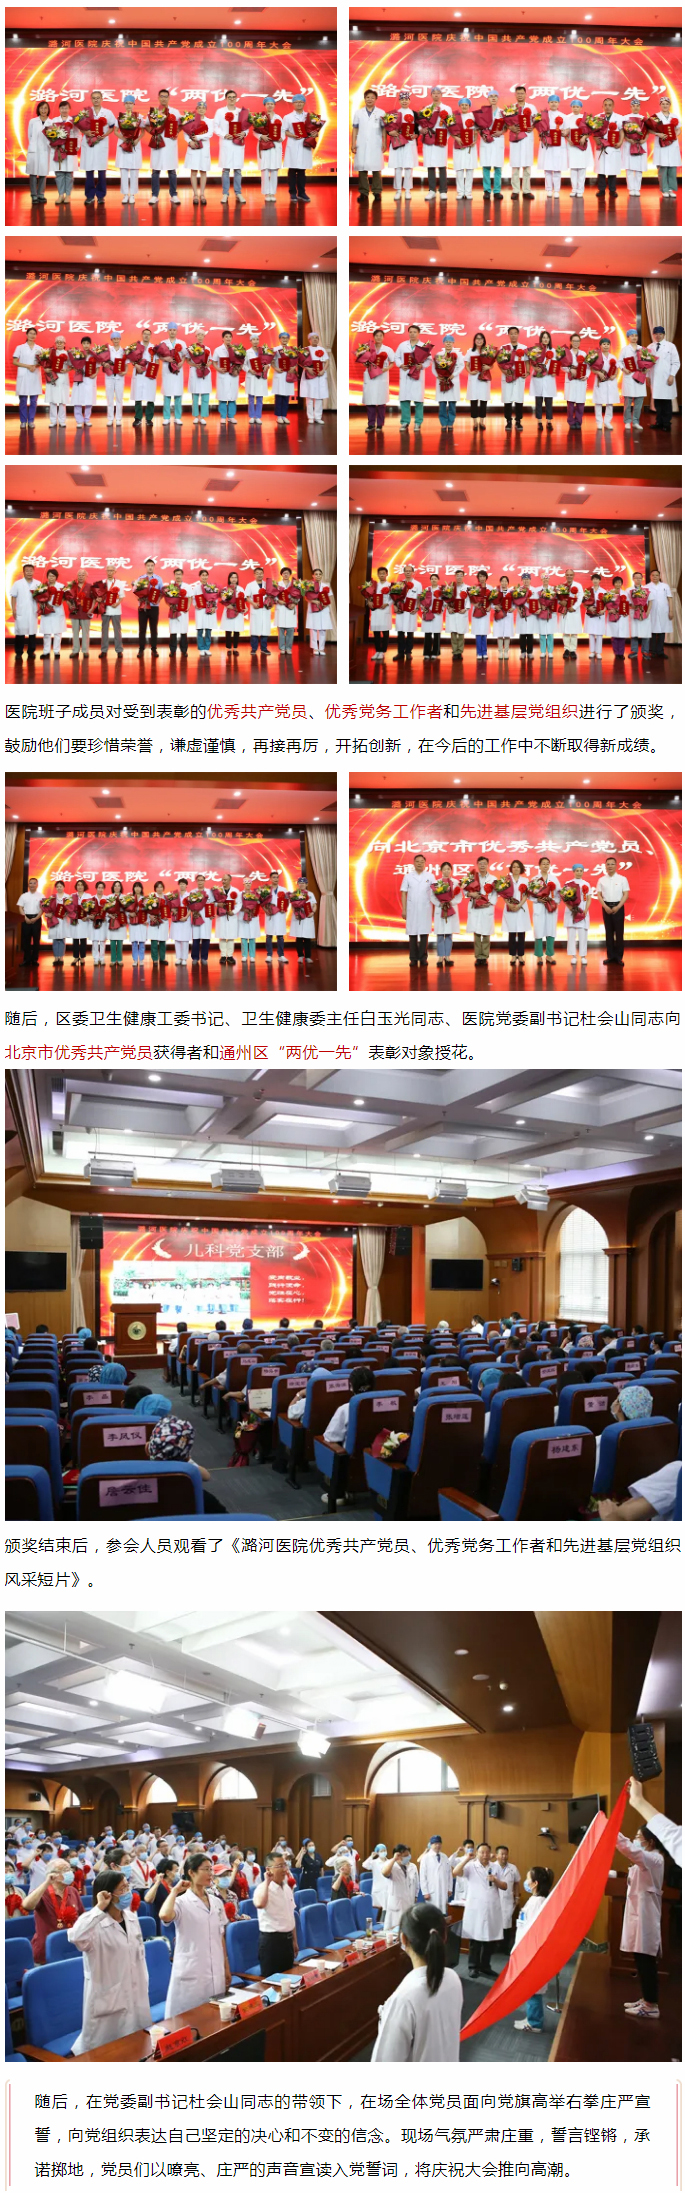 6-25 潞河医院召开庆祝中国共产党成立100周年大会--1.jpg